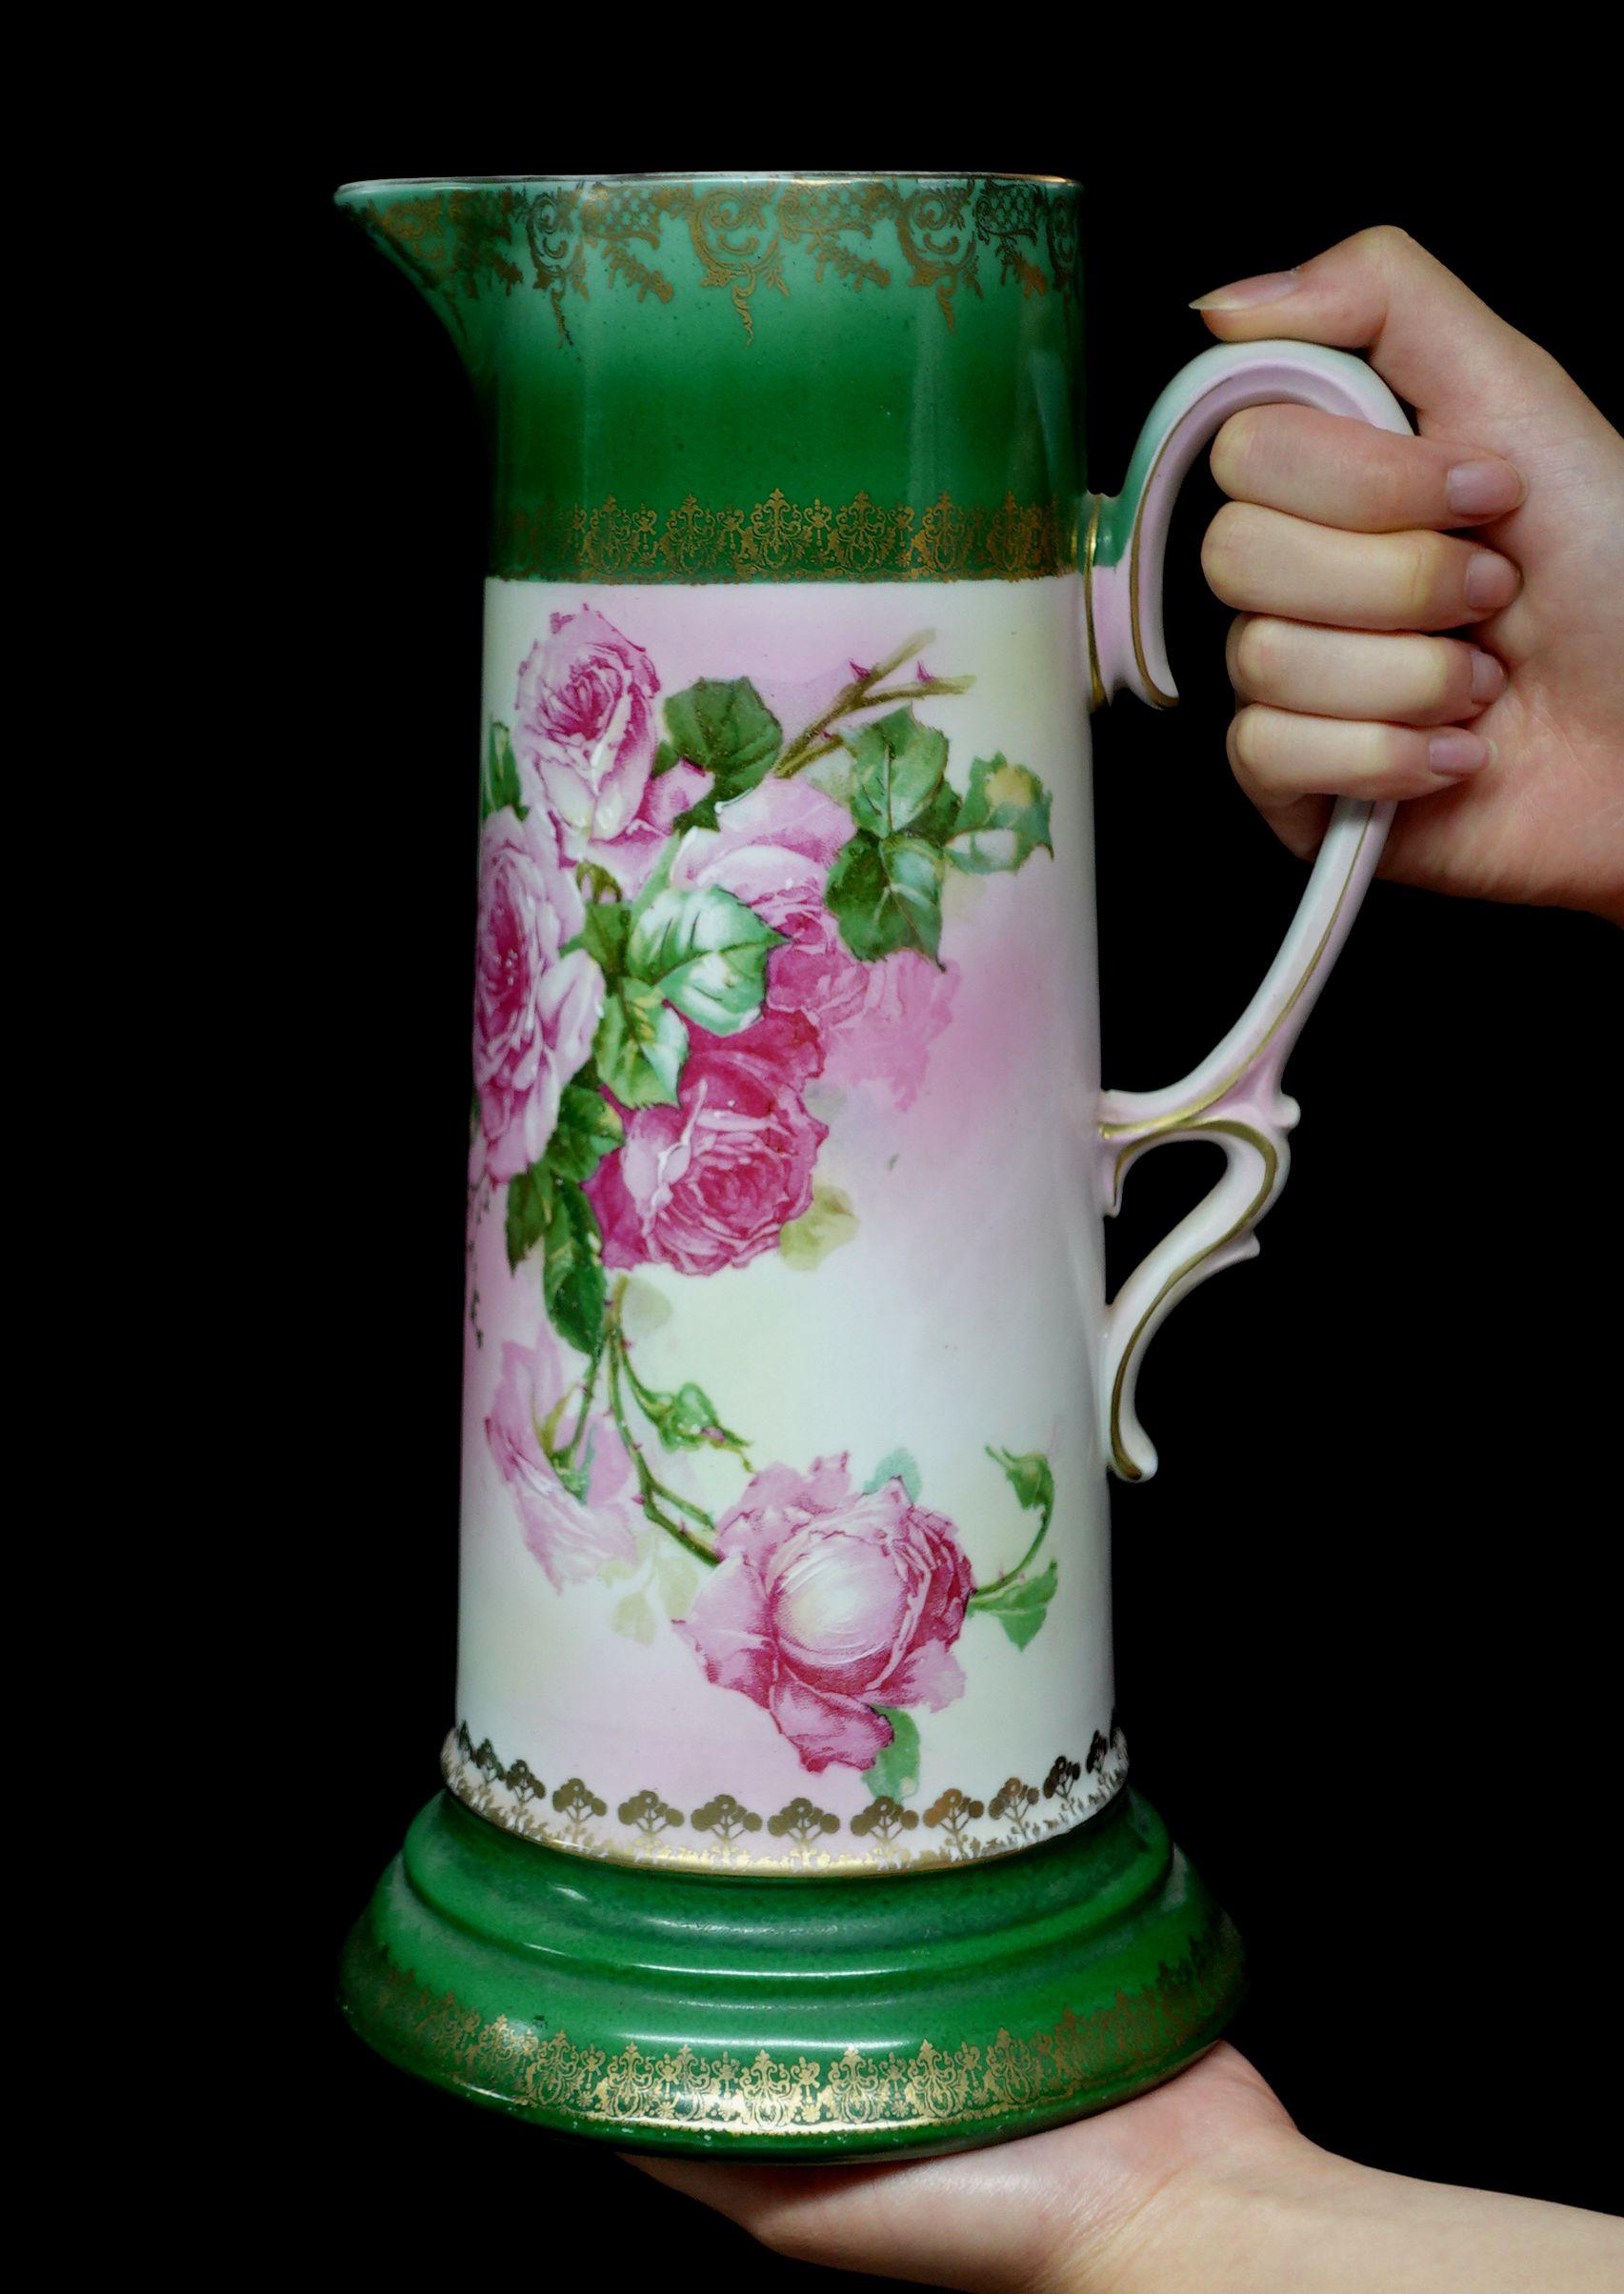 Un merveilleux antique Habsbourg Autriche grand Tankard absolument 100% peint à la main floral, roses en rouge avec riche présentation des feuilles vertes. Les deux couleurs, le rose et le clair, mélangées sur l'ensemble de la porcelaine, attirent